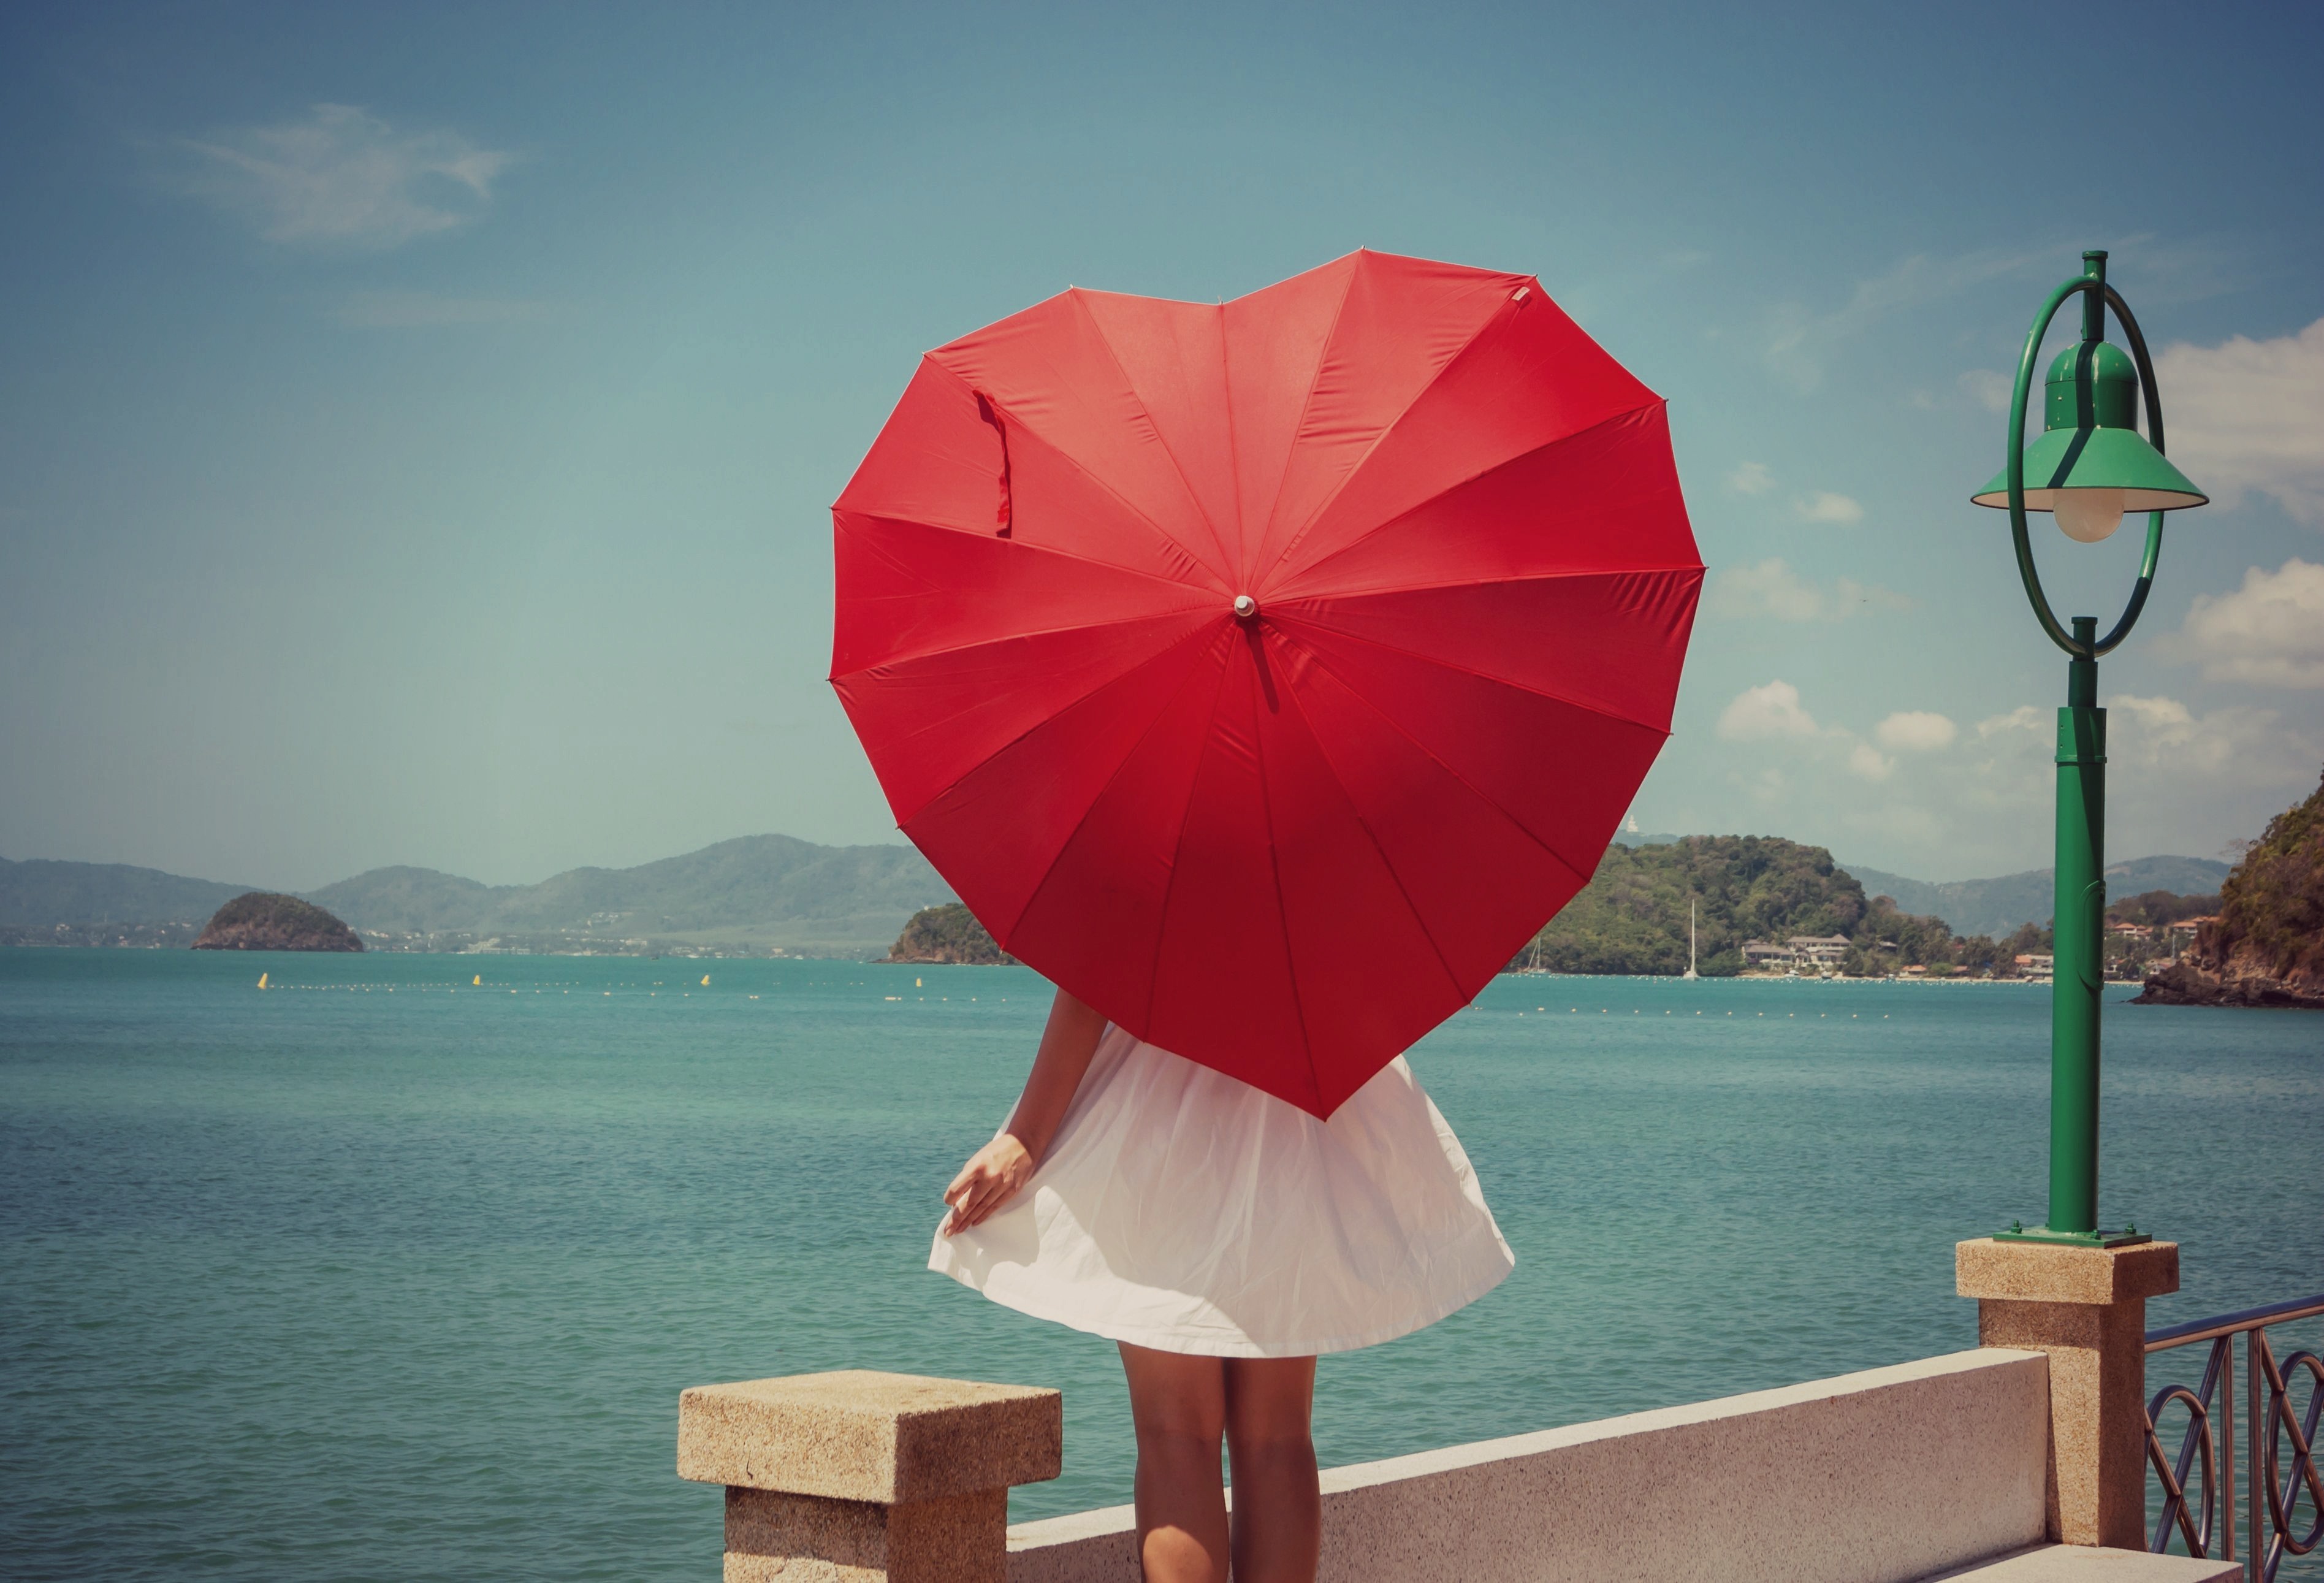 Картинки на ватсап красивые. Девушка с зонтом. Девушка с красным зонтом. Девушка с красным зонтом в виде сердца. Девушка с ярким зонтом.